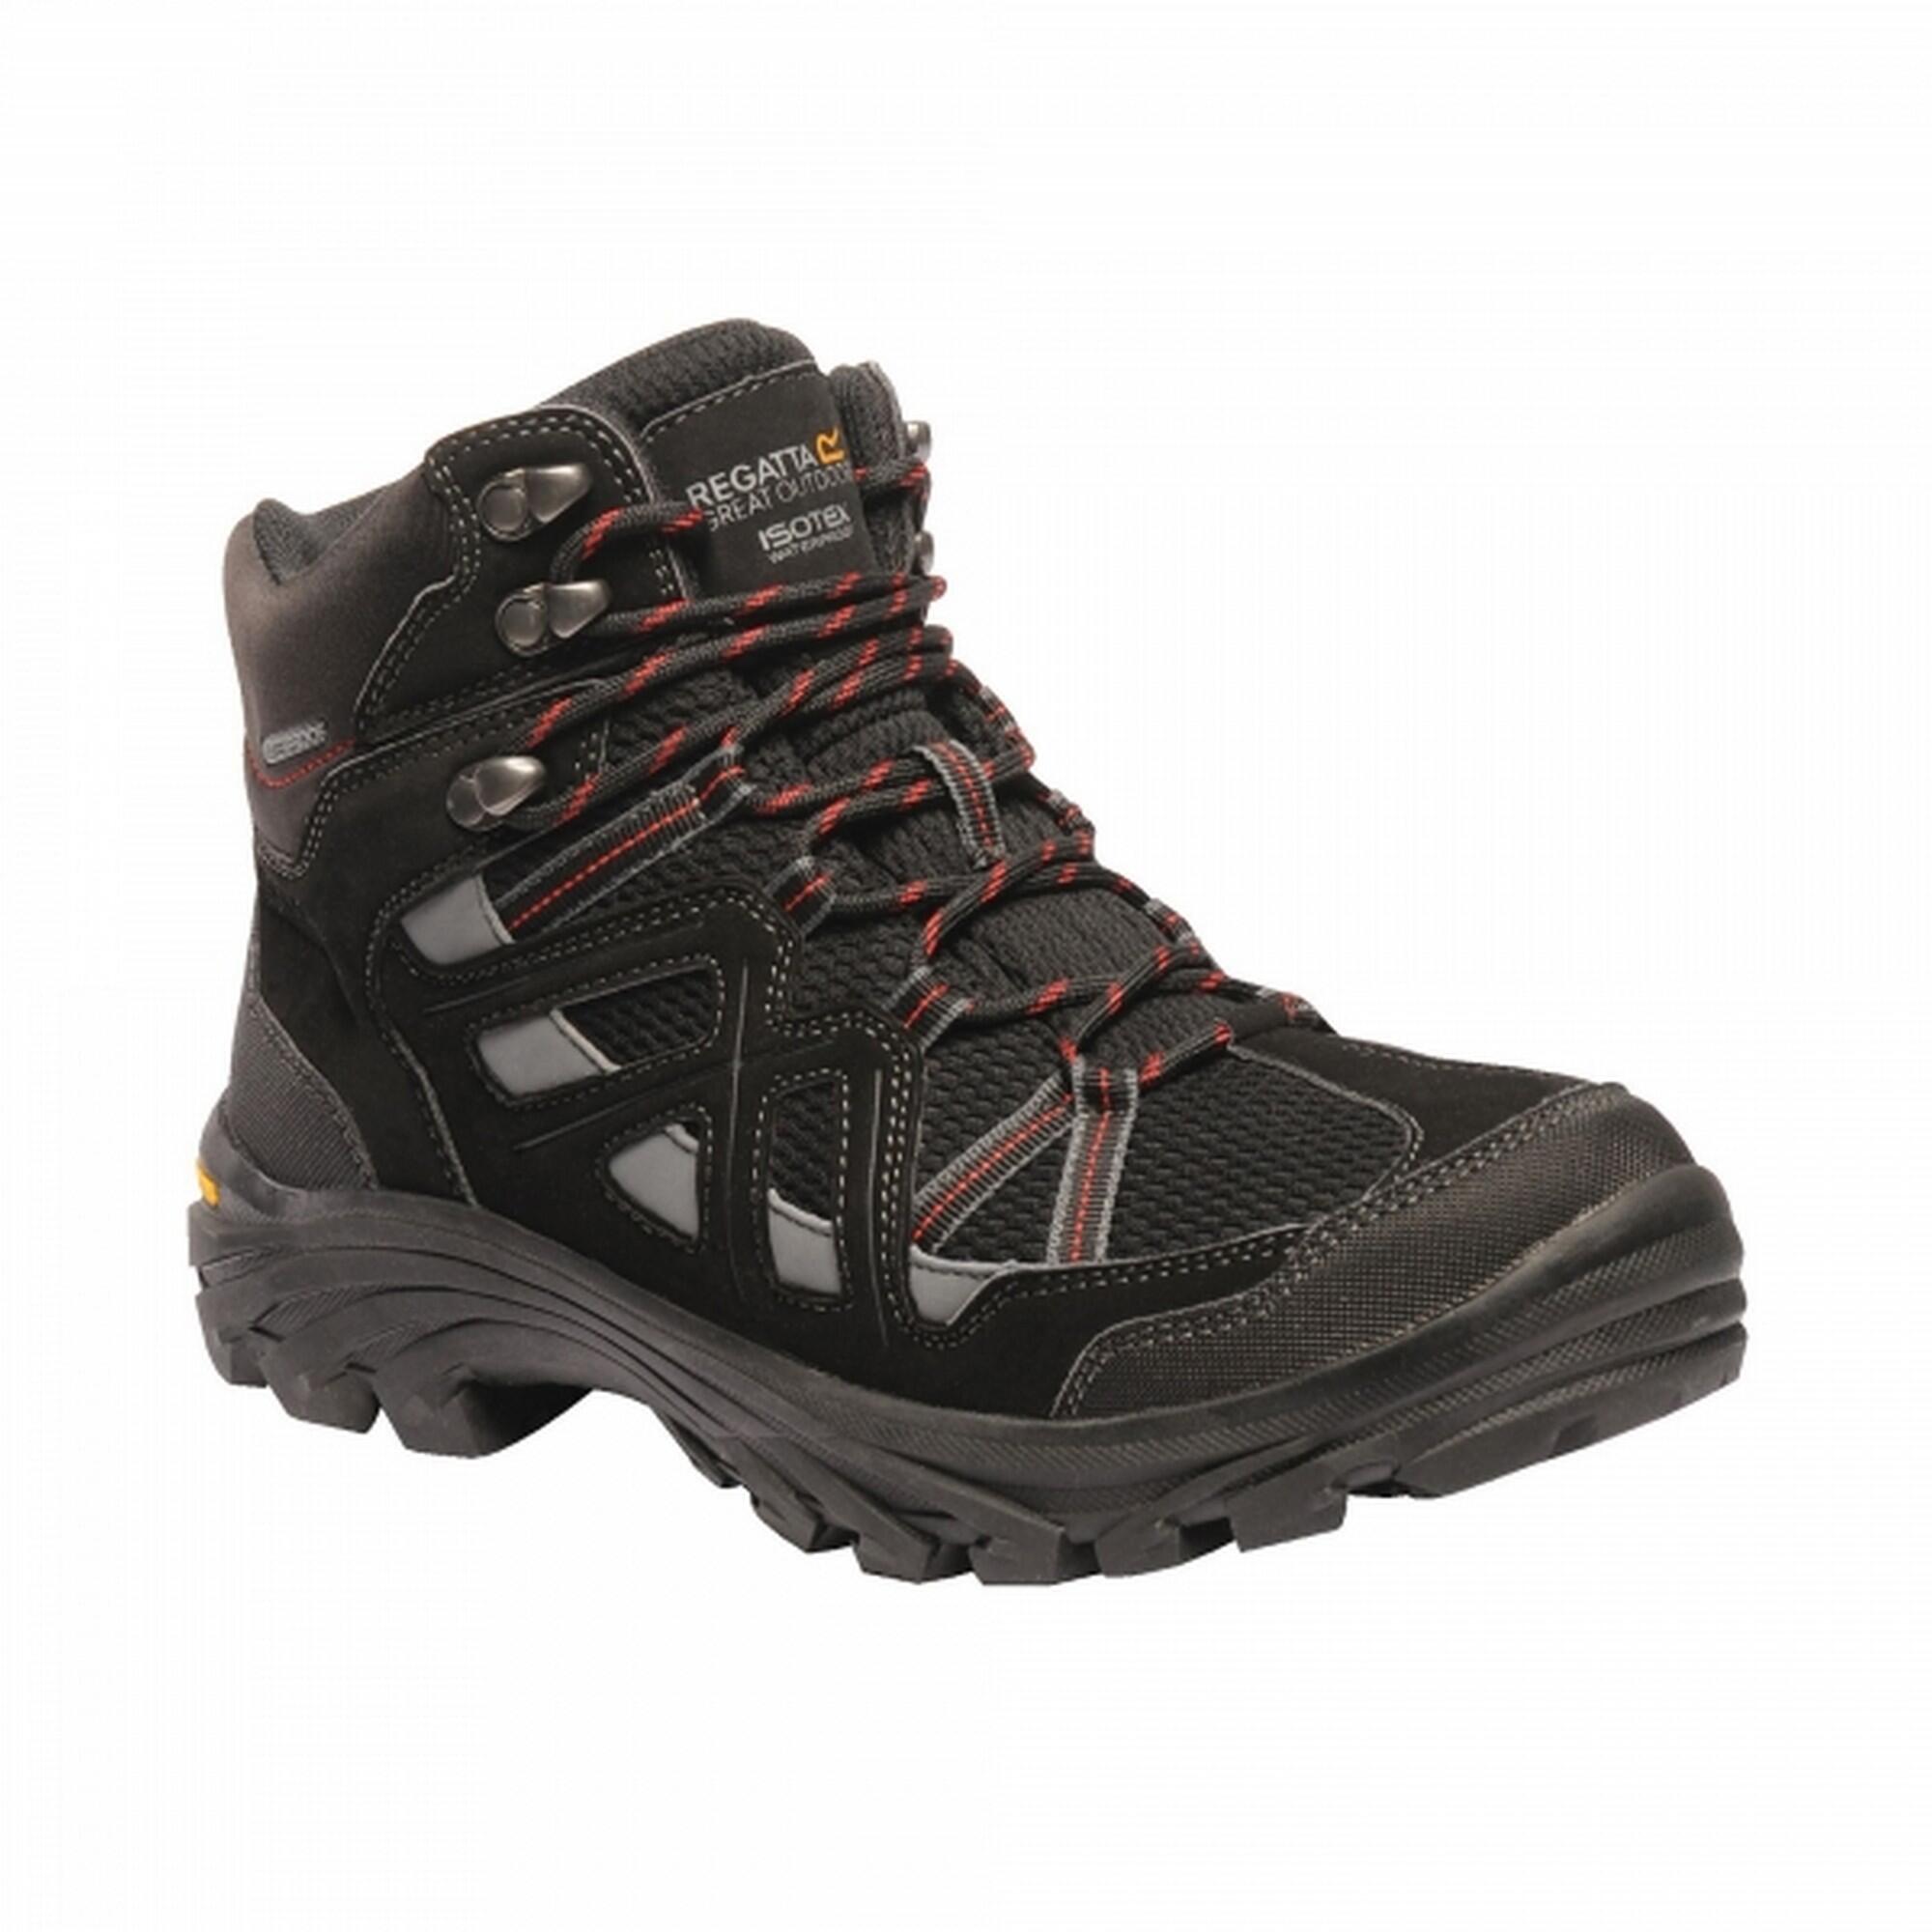 REGATTA Mens Burrell II Hiking Boots (Jet Black/Granite Grey)